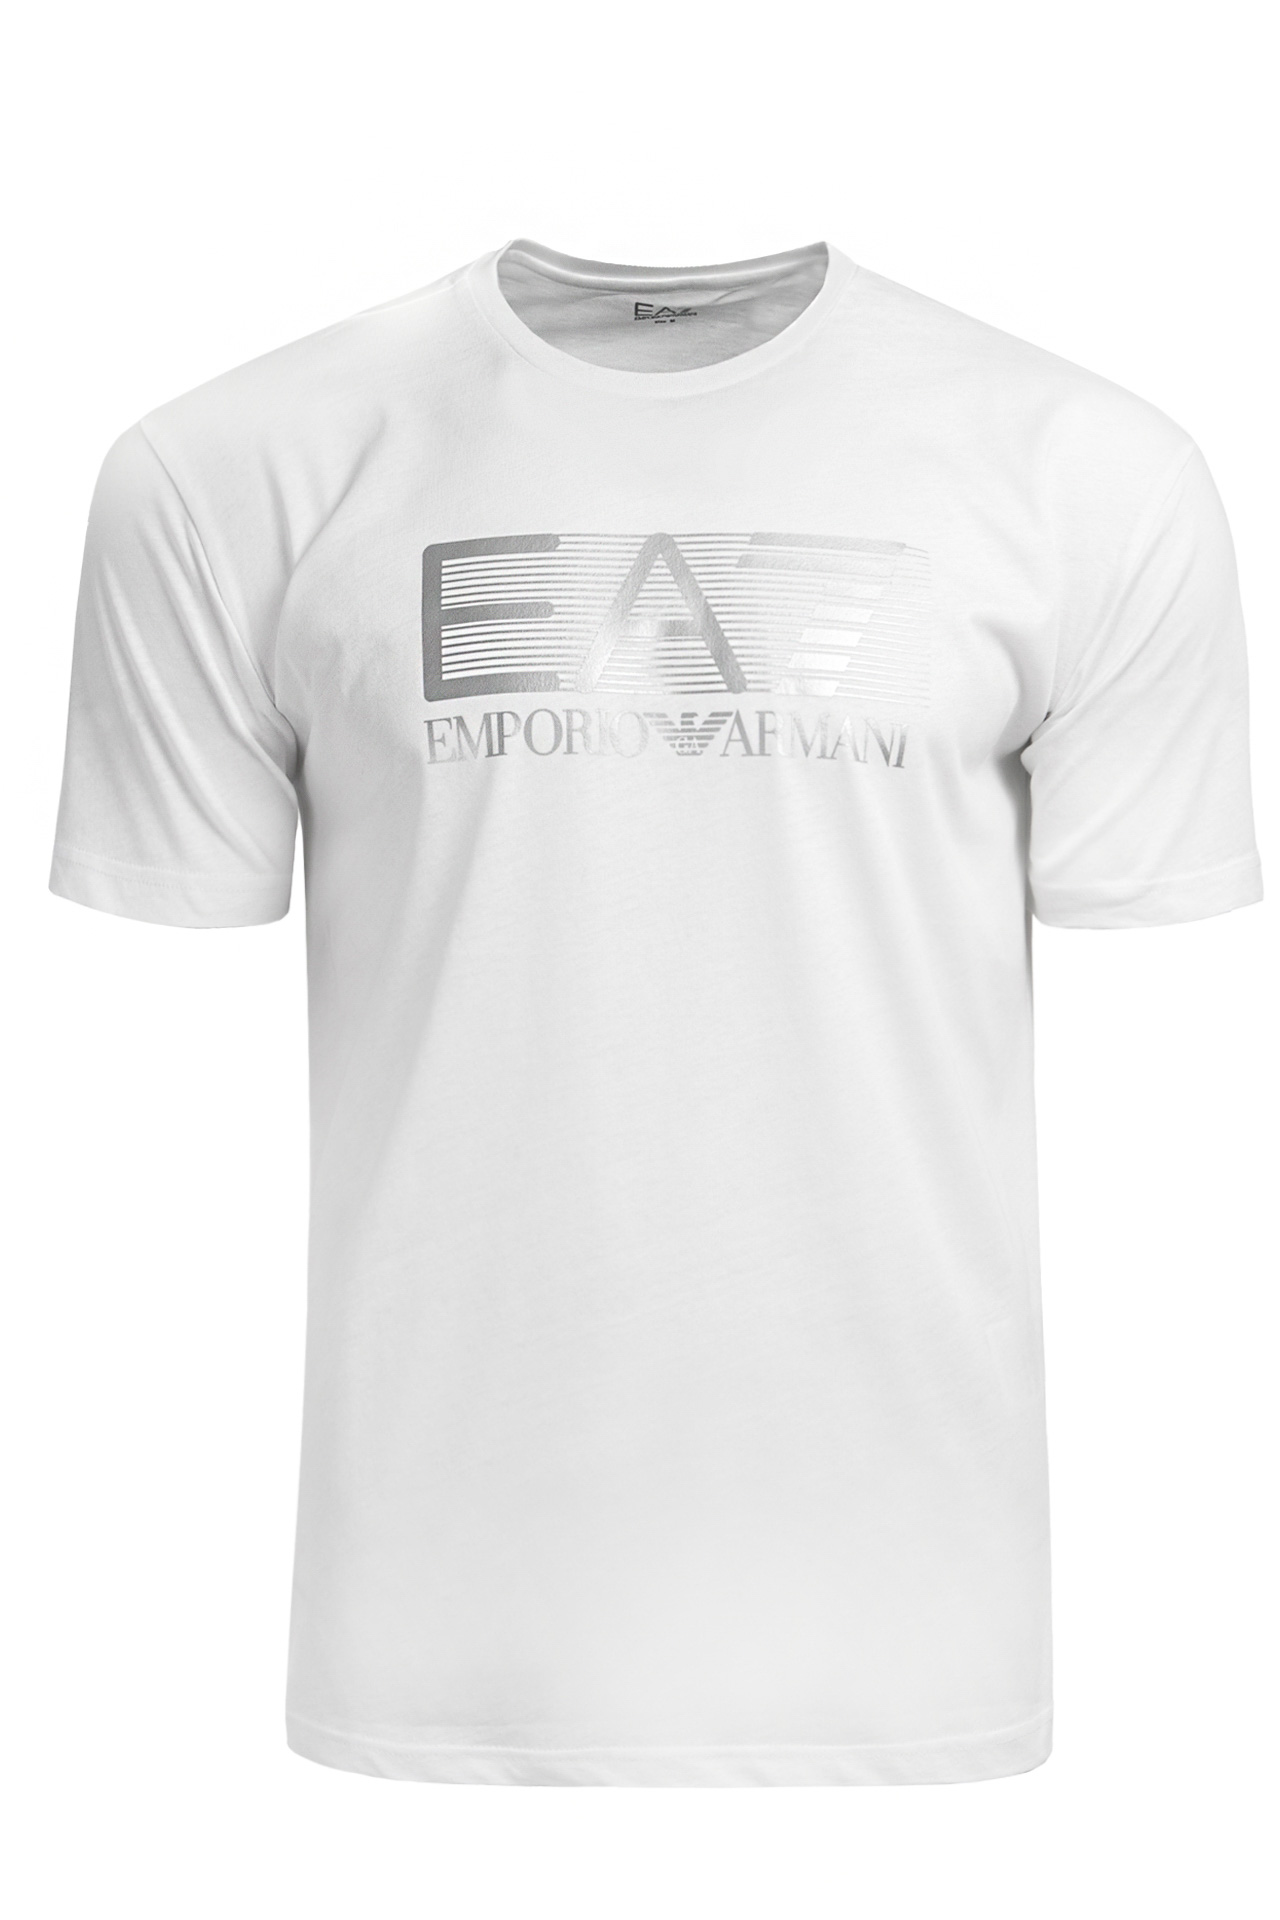 Koszulka męska EA7 Emporio Armani 6LPT09-PJ02Z-0100